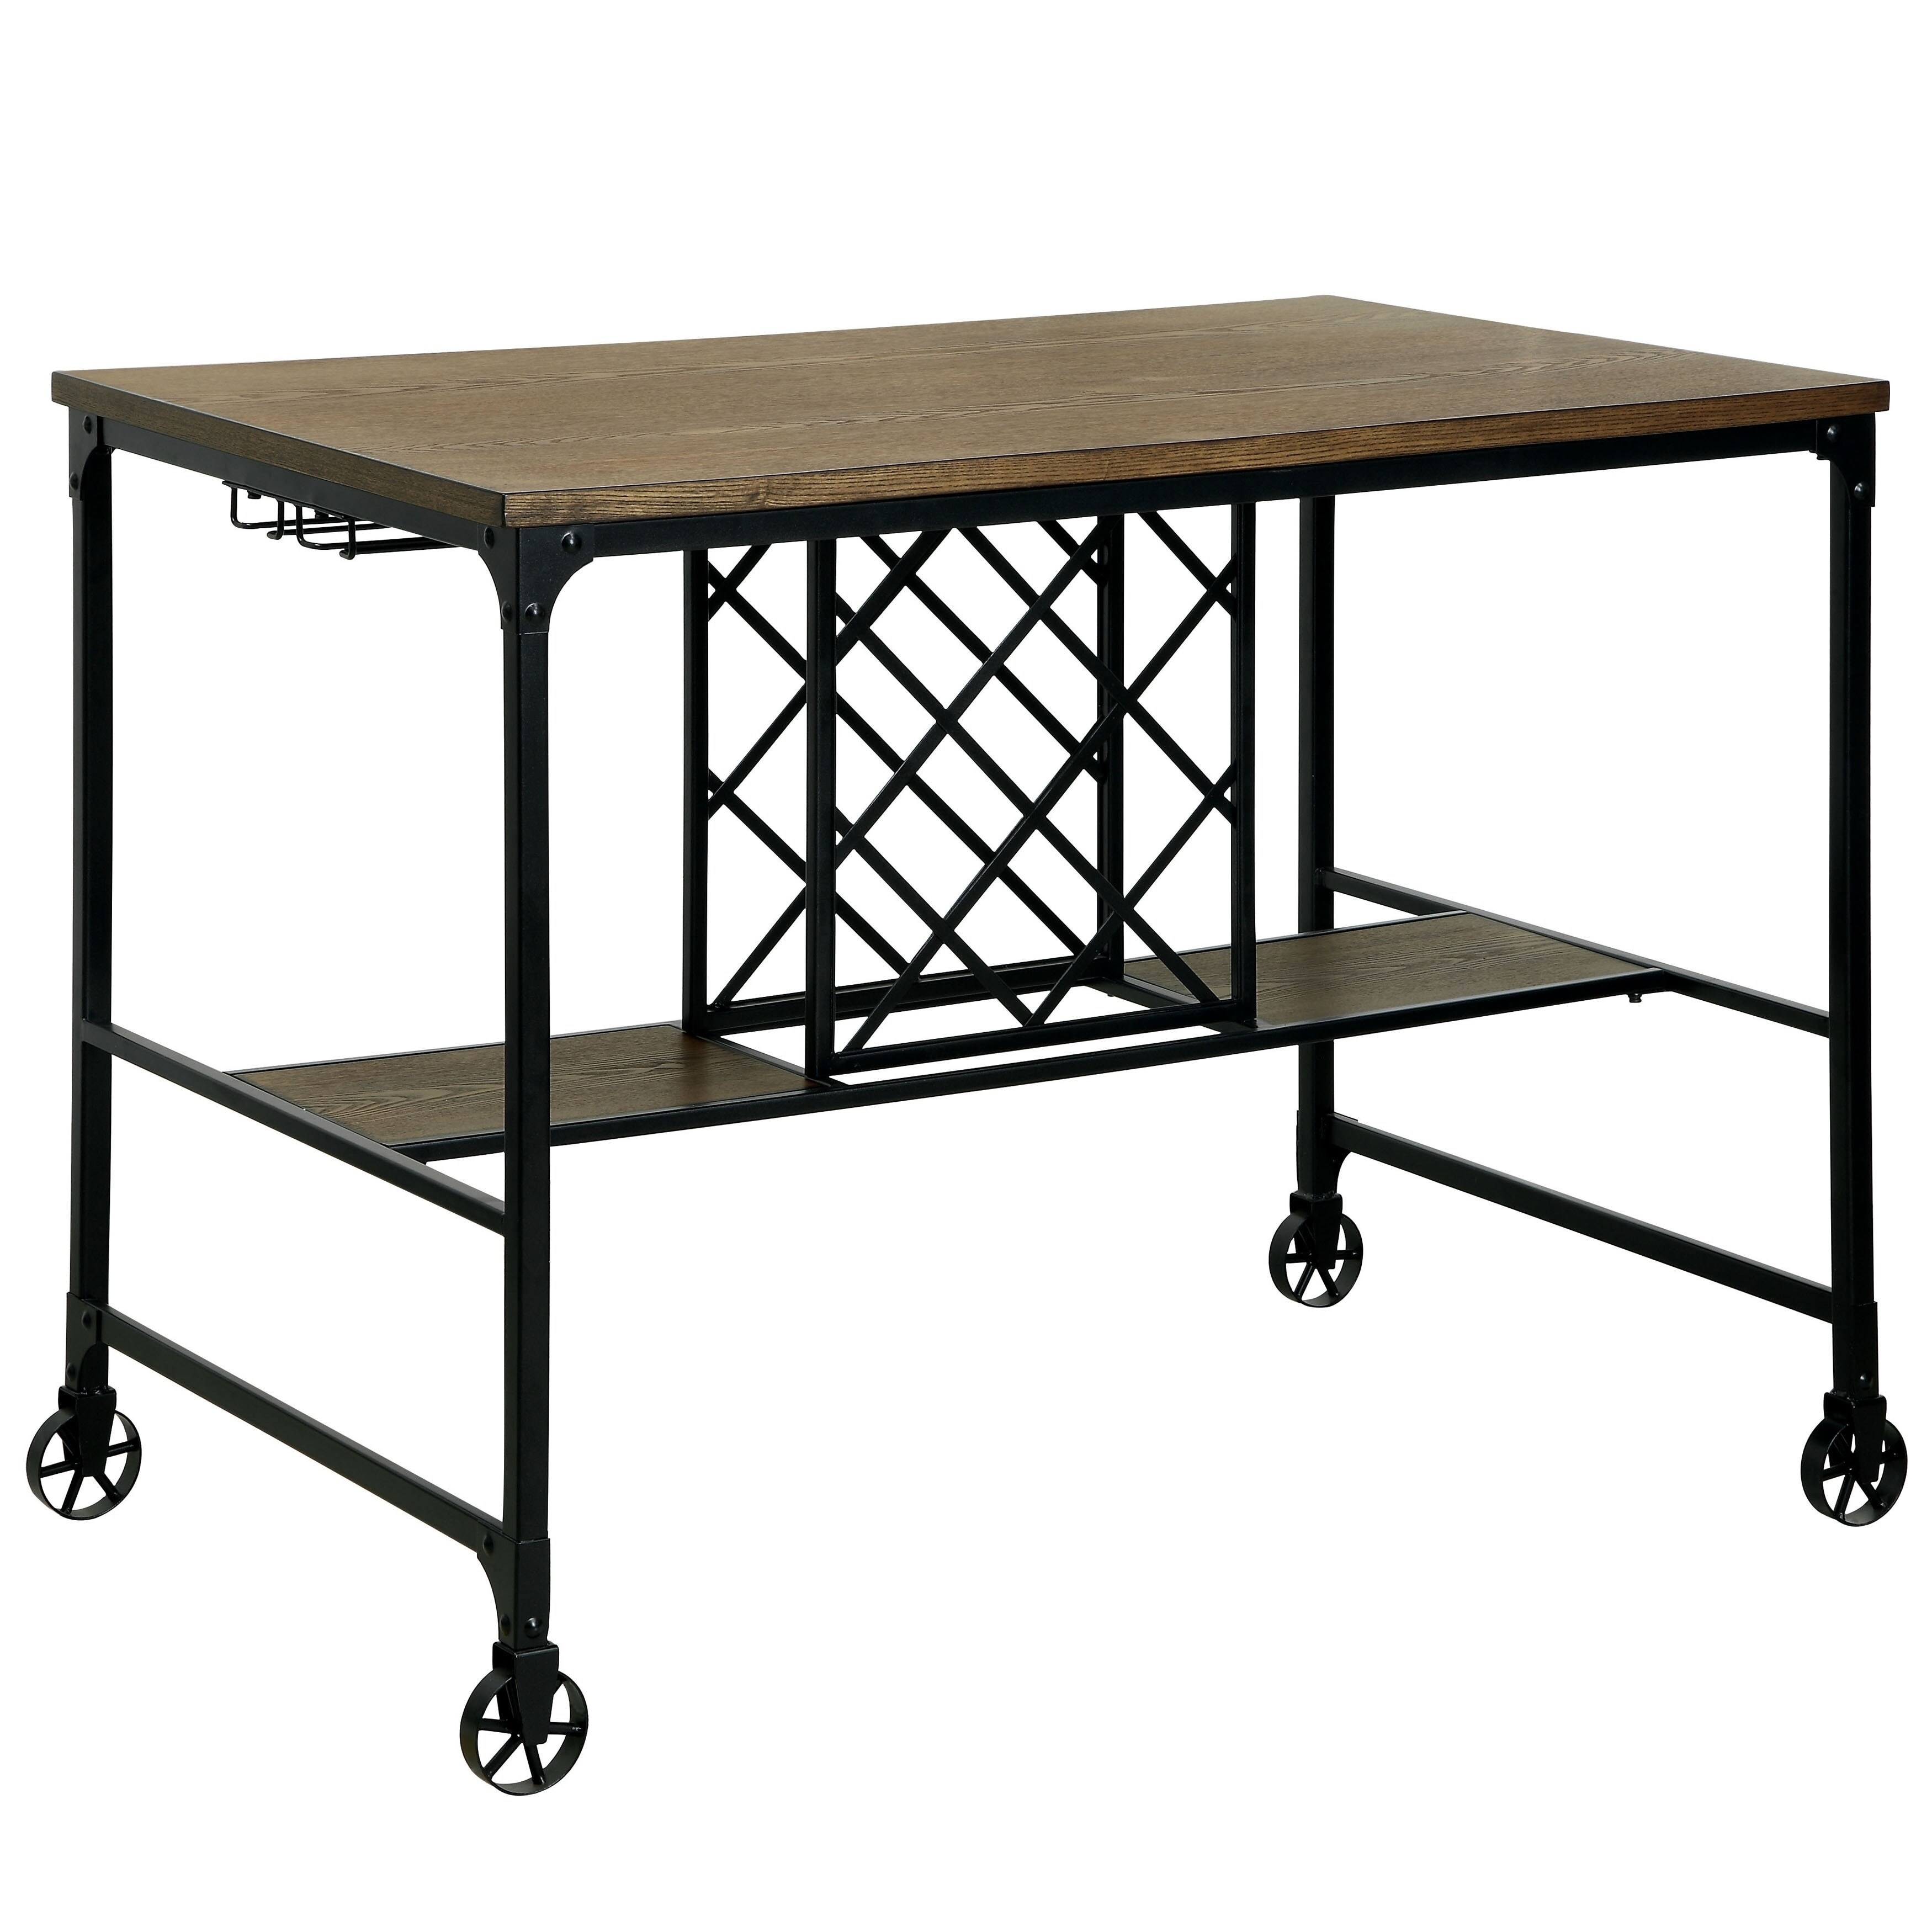 Shop Furniture Of America Ursa Industrial Oak 48 Inch Counter